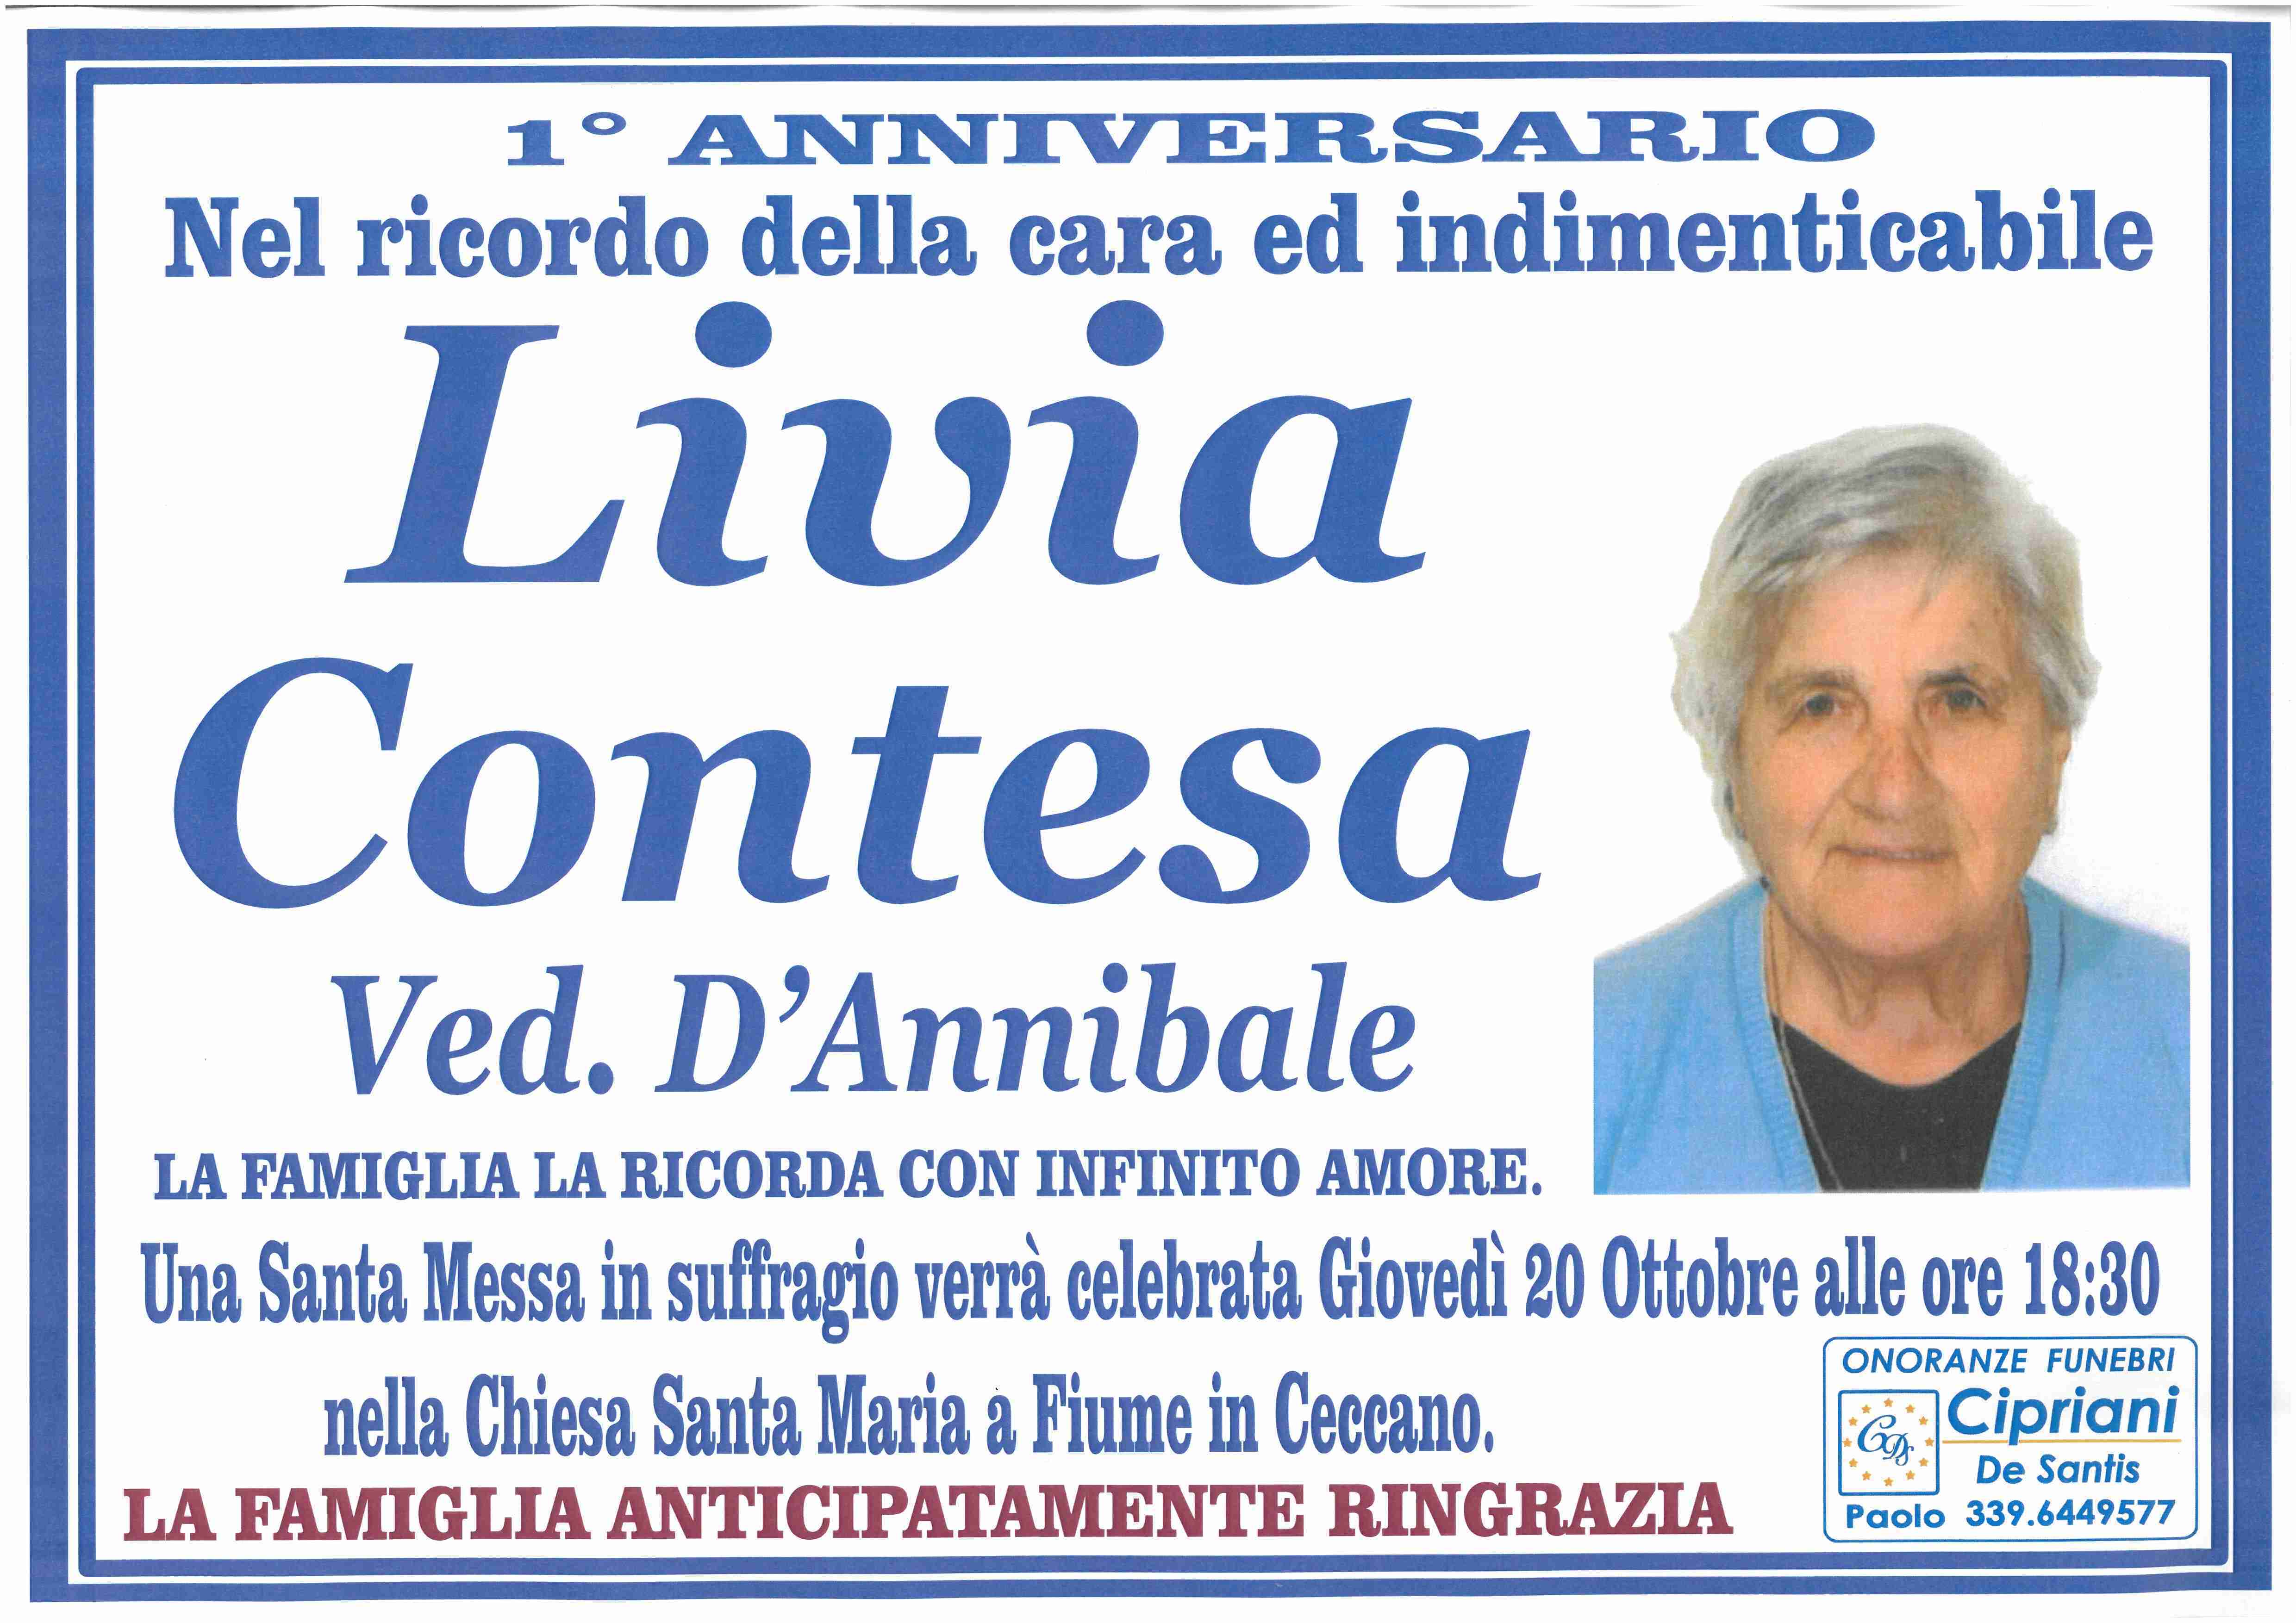 Livia Contesa